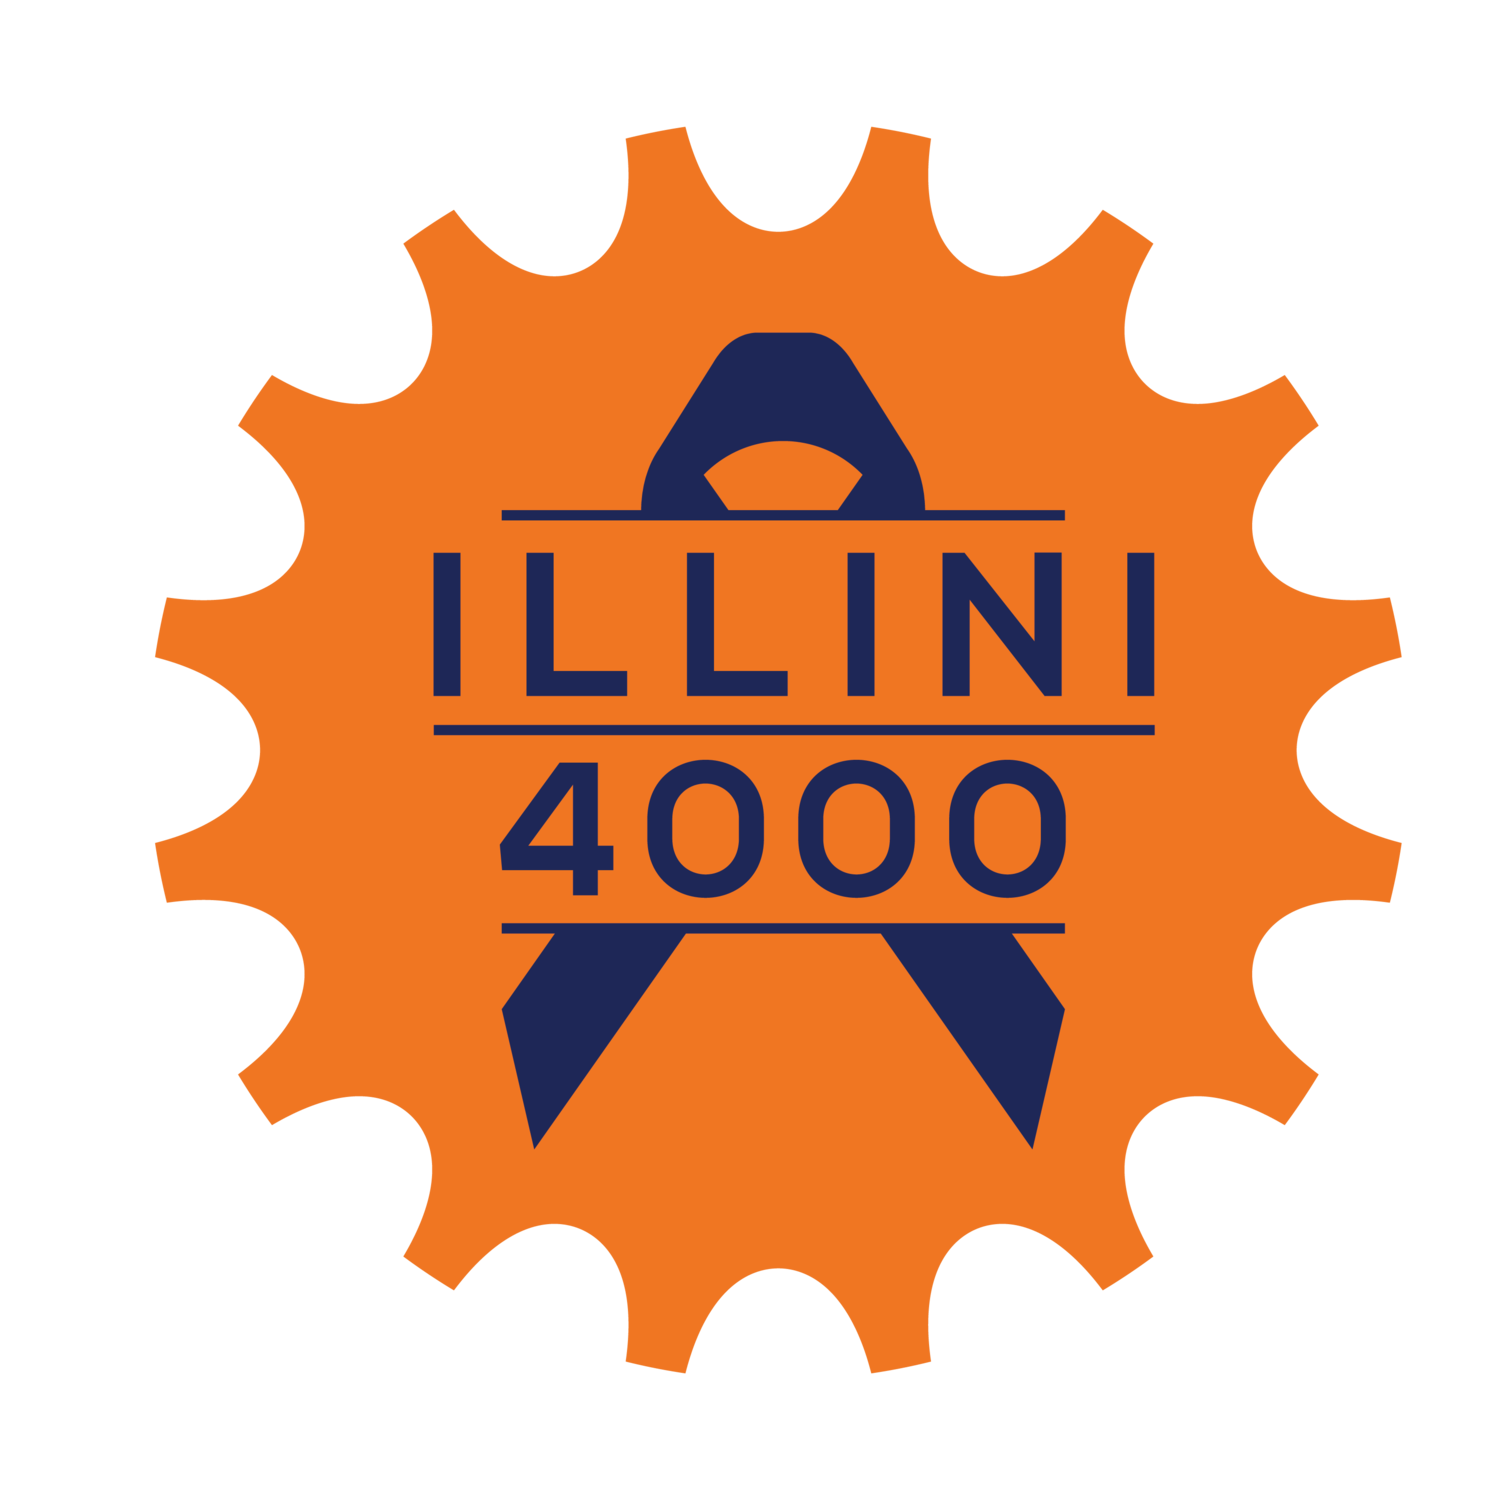 Illini 4000